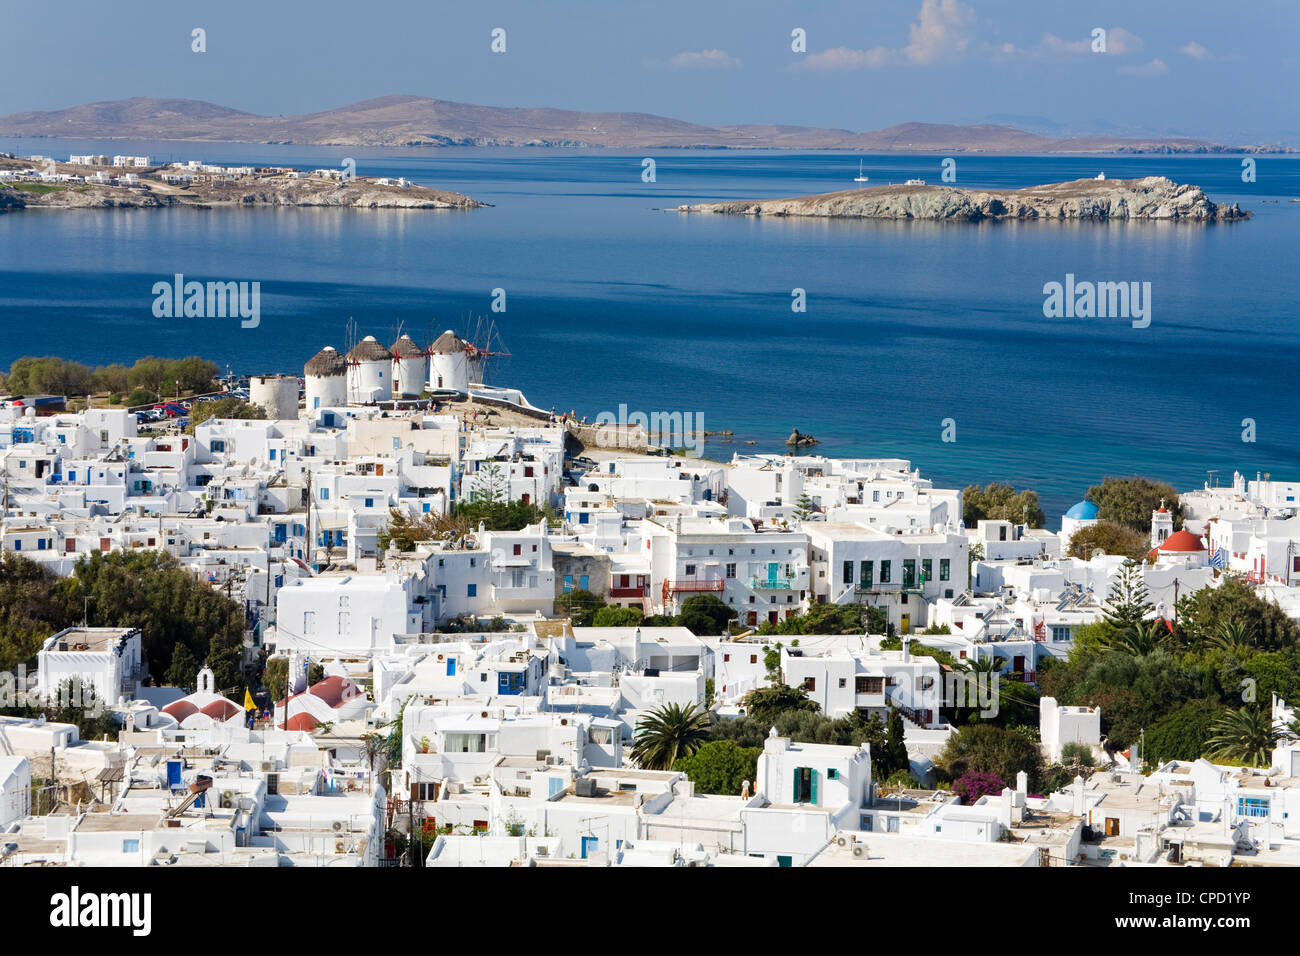 La ville de Mykonos, l'île de Mykonos, Cyclades, îles grecques, Grèce, Europe Banque D'Images